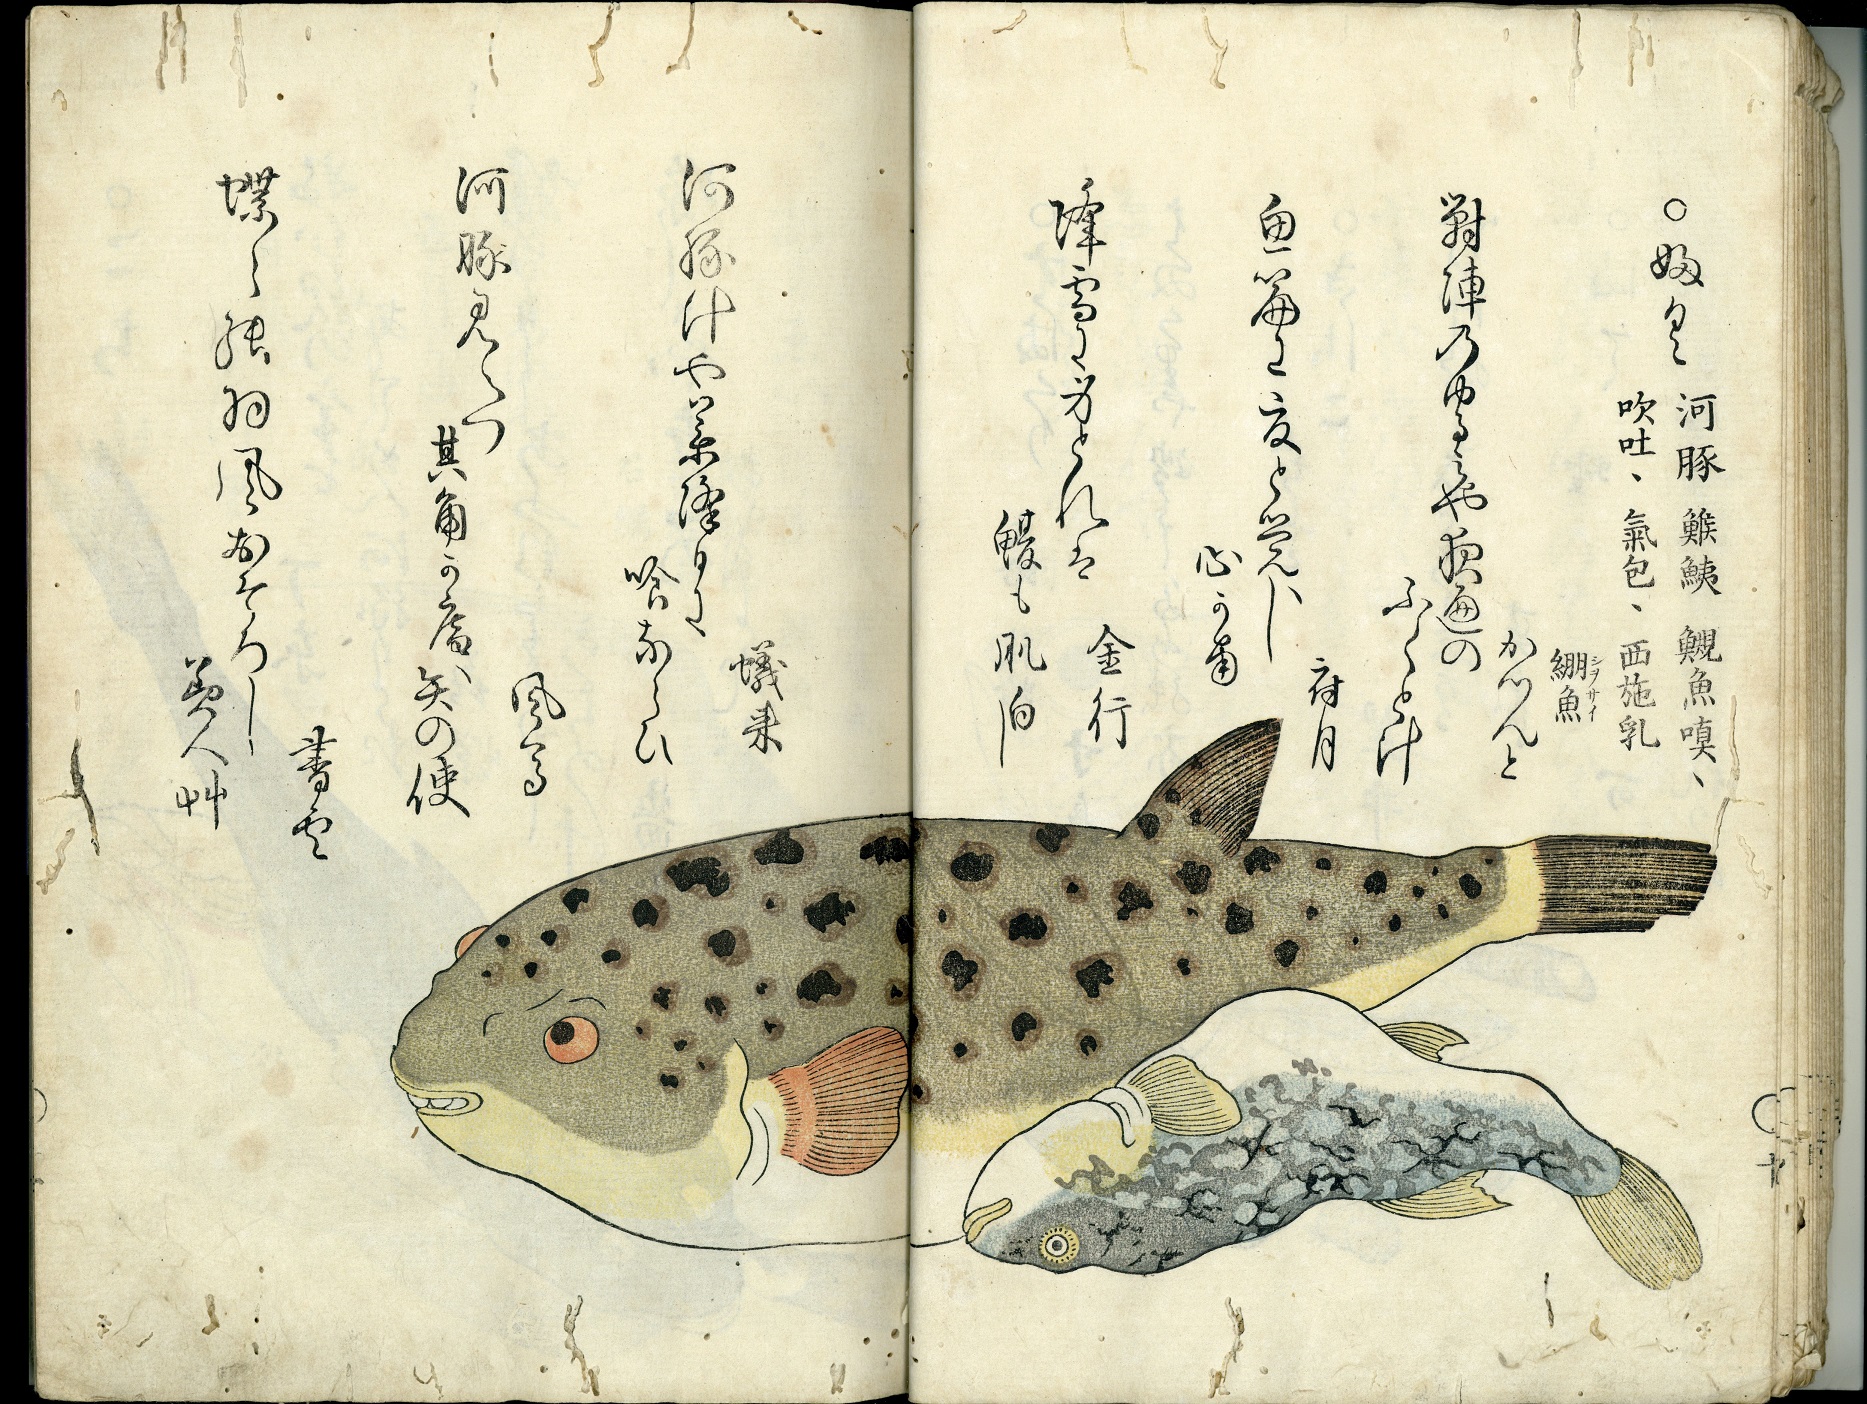 雅俗文庫『海の幸』『山の幸』をデジタル化しました | 九州大学附属図書館